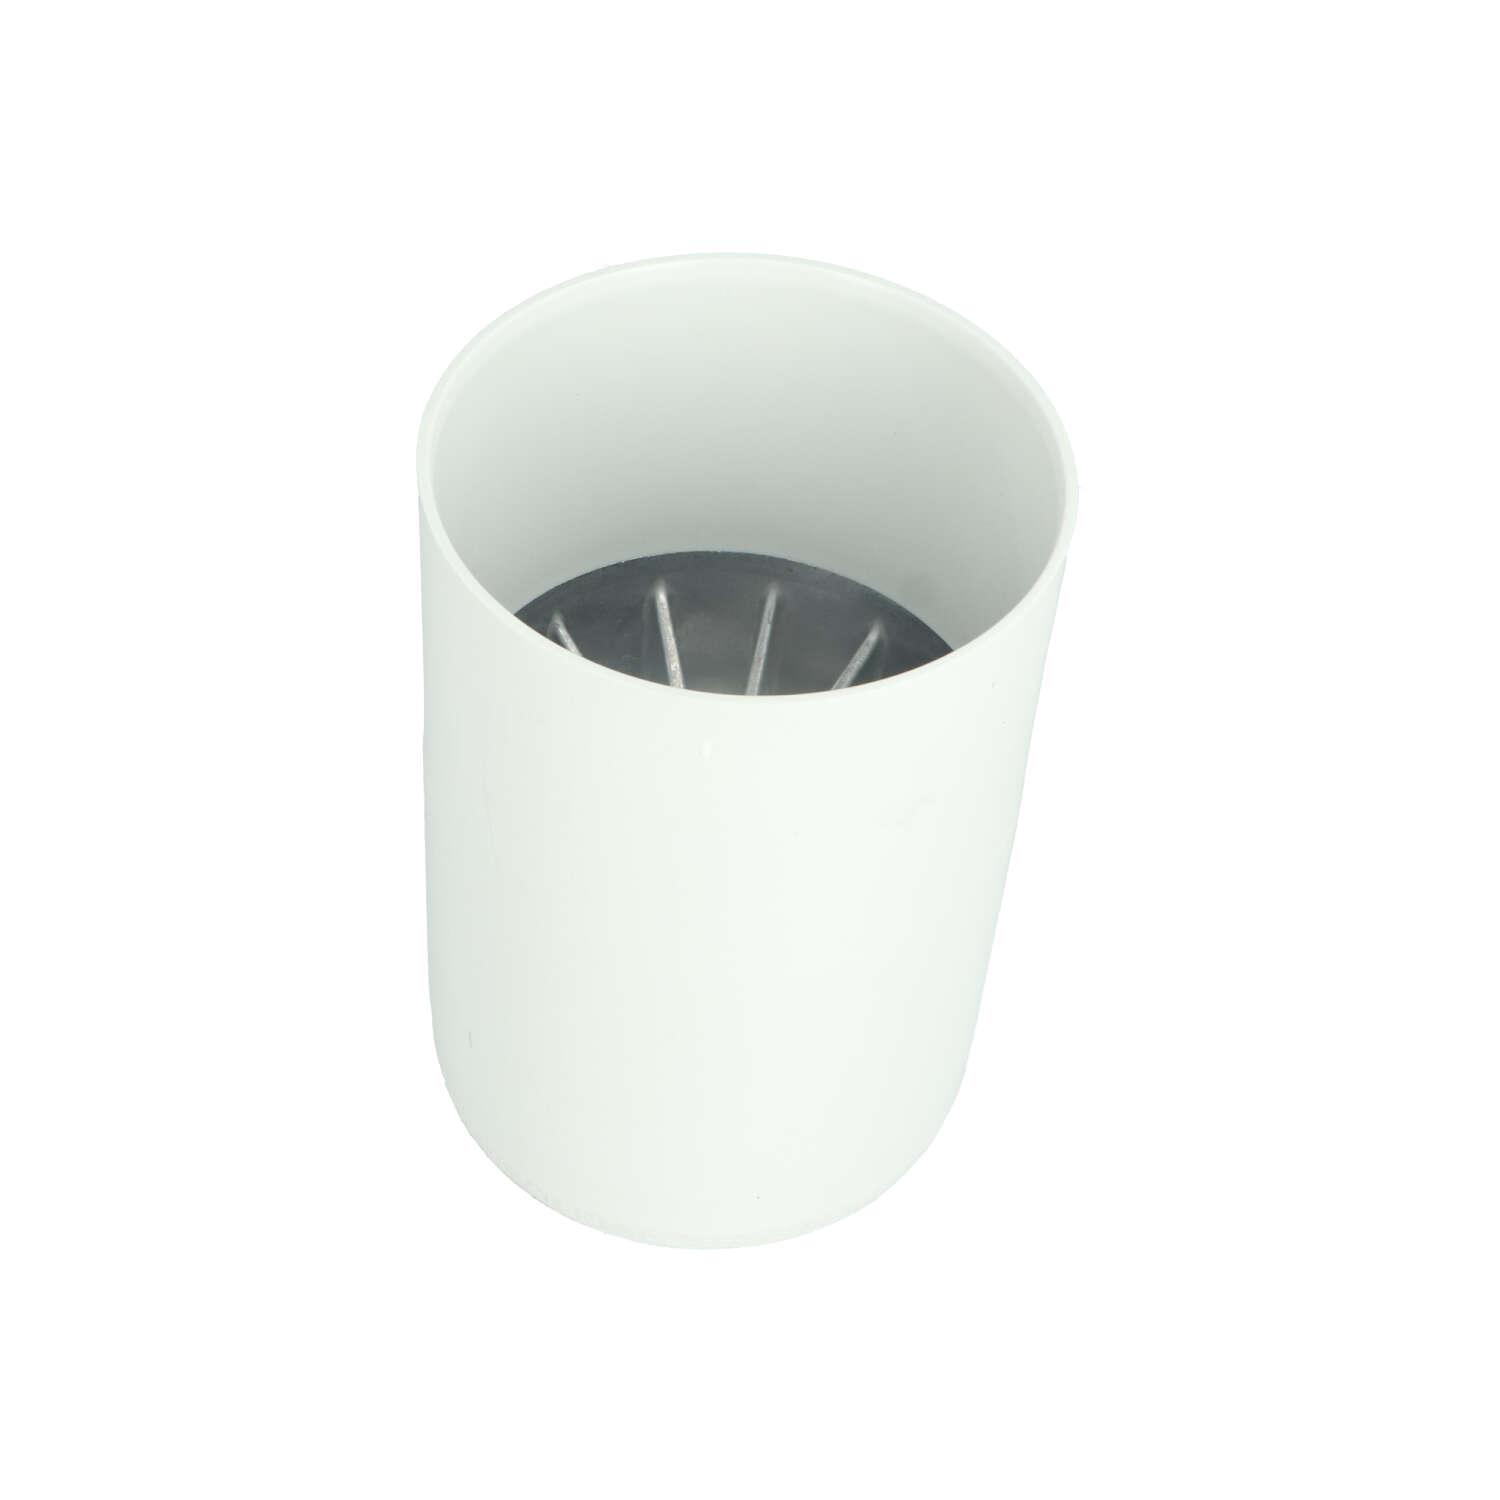 Hole cup Hybrid